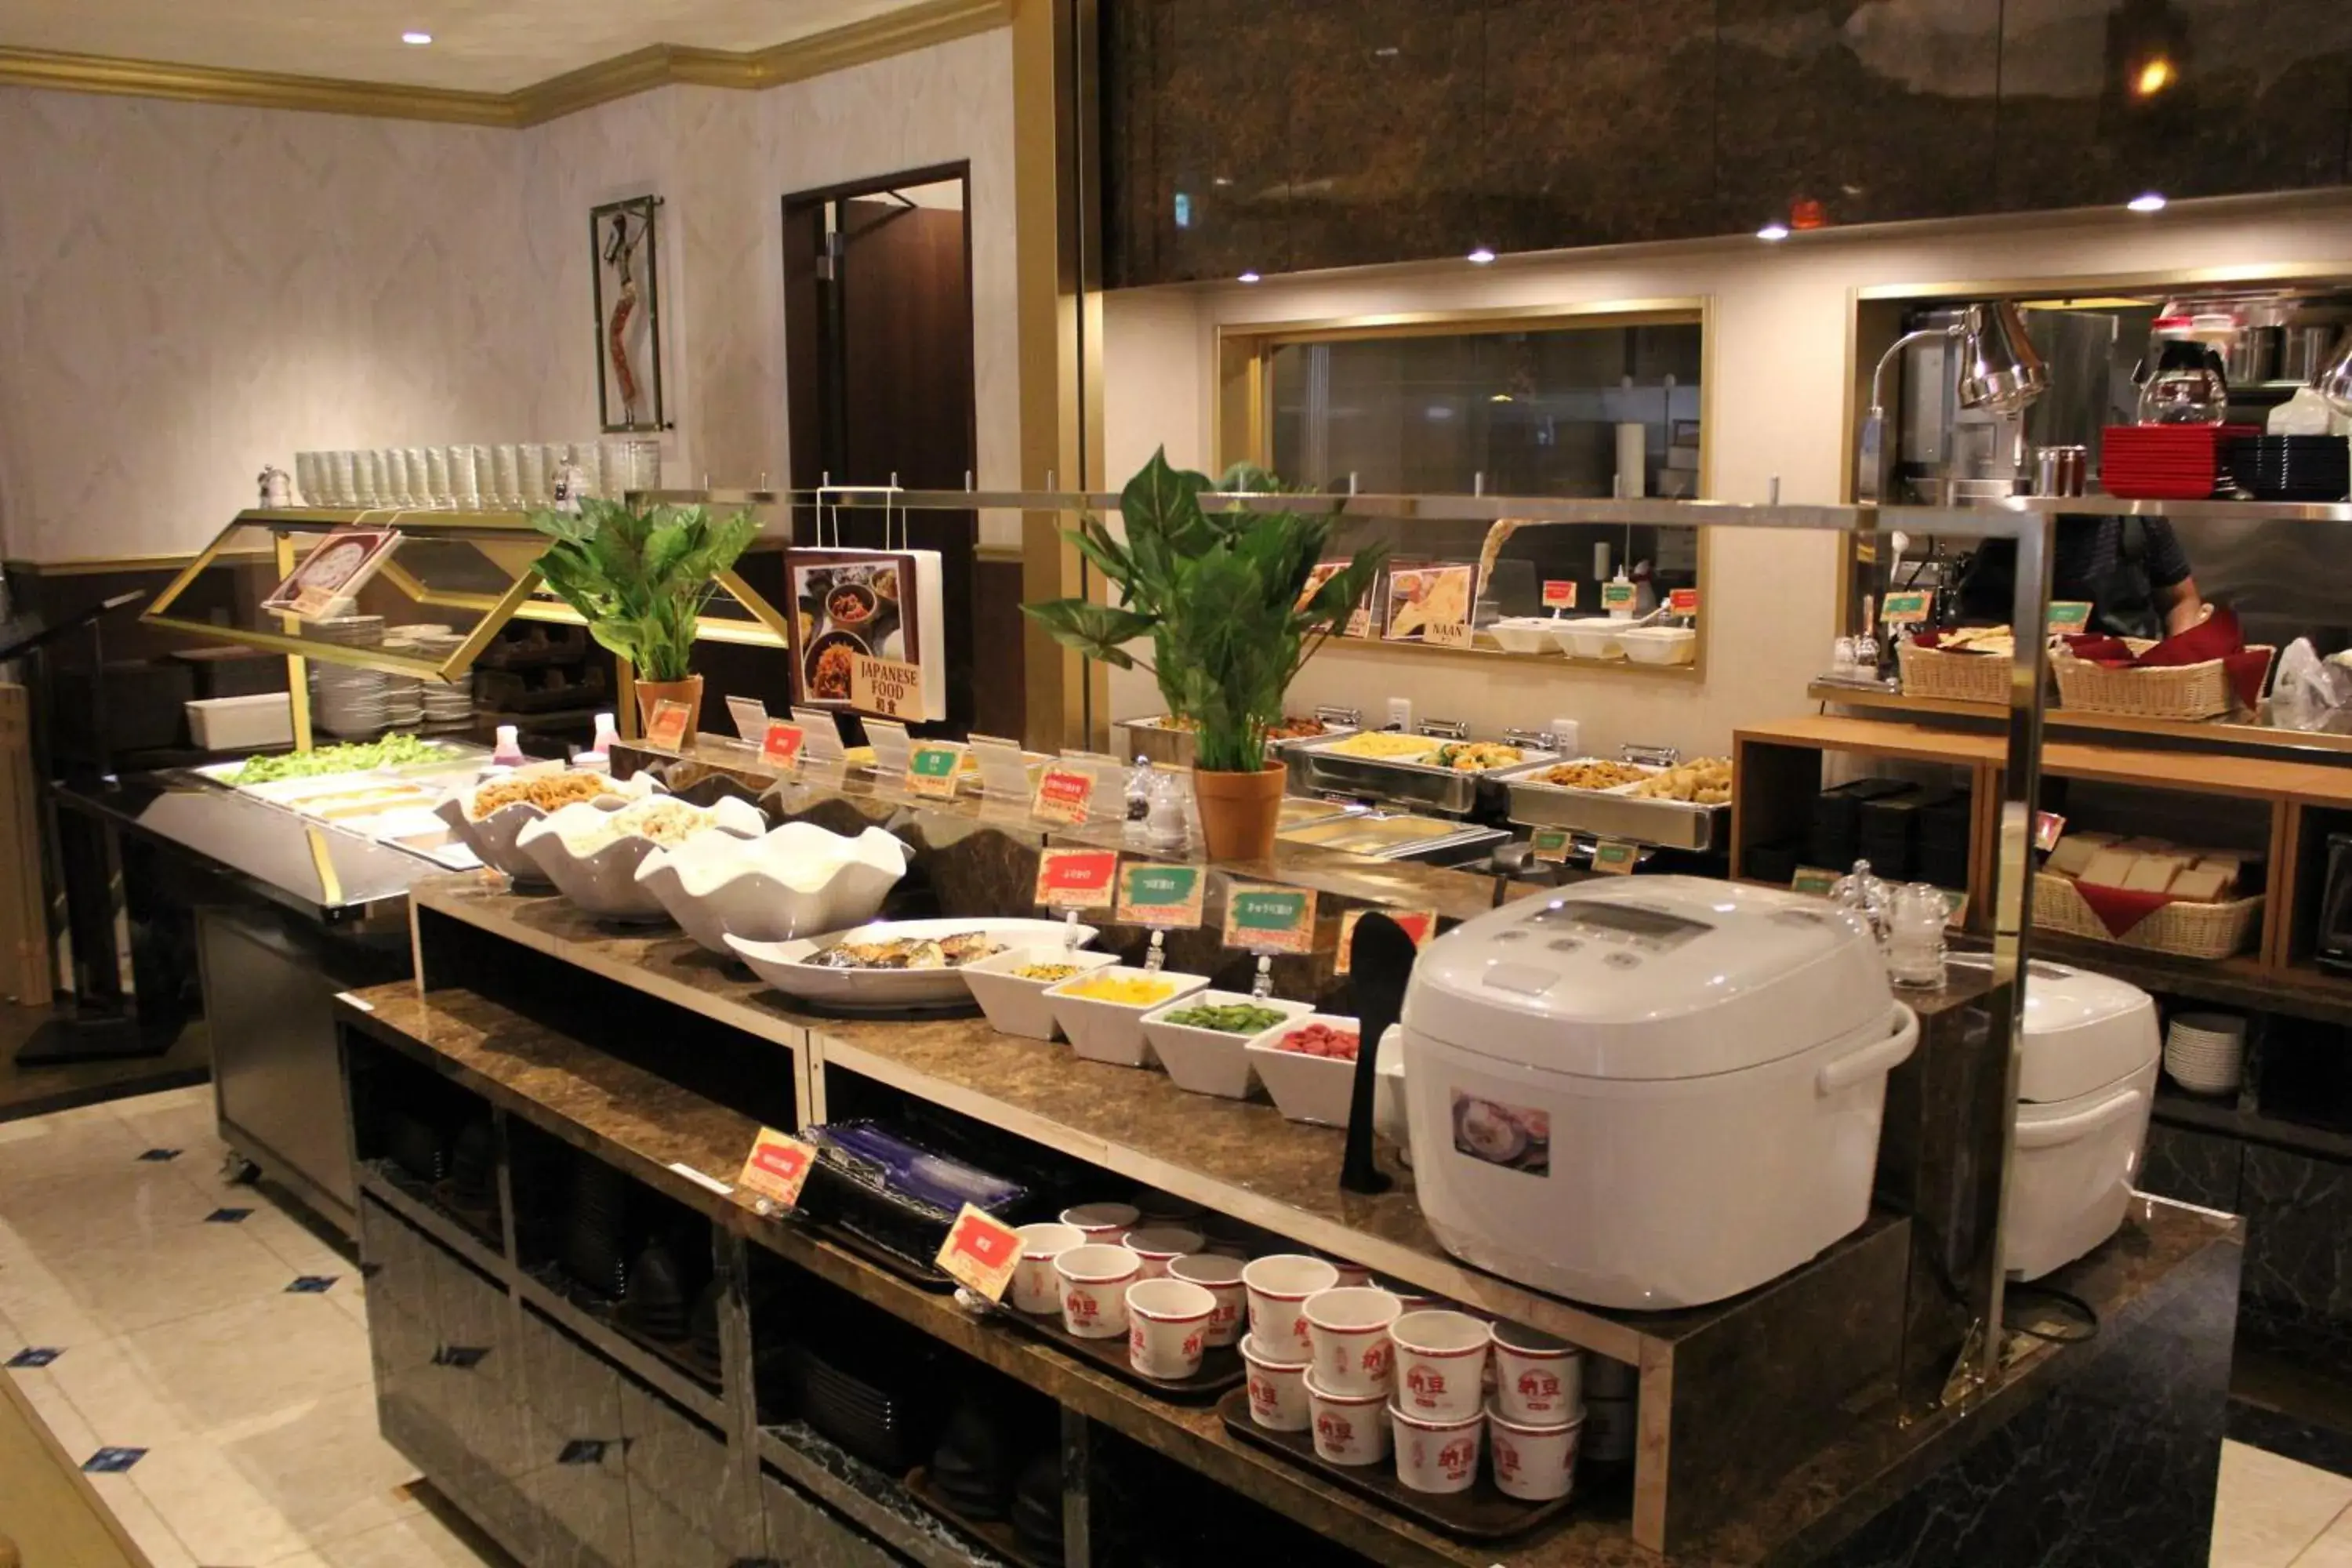 Buffet breakfast in Henn na Hotel Tokyo Asakusabashi